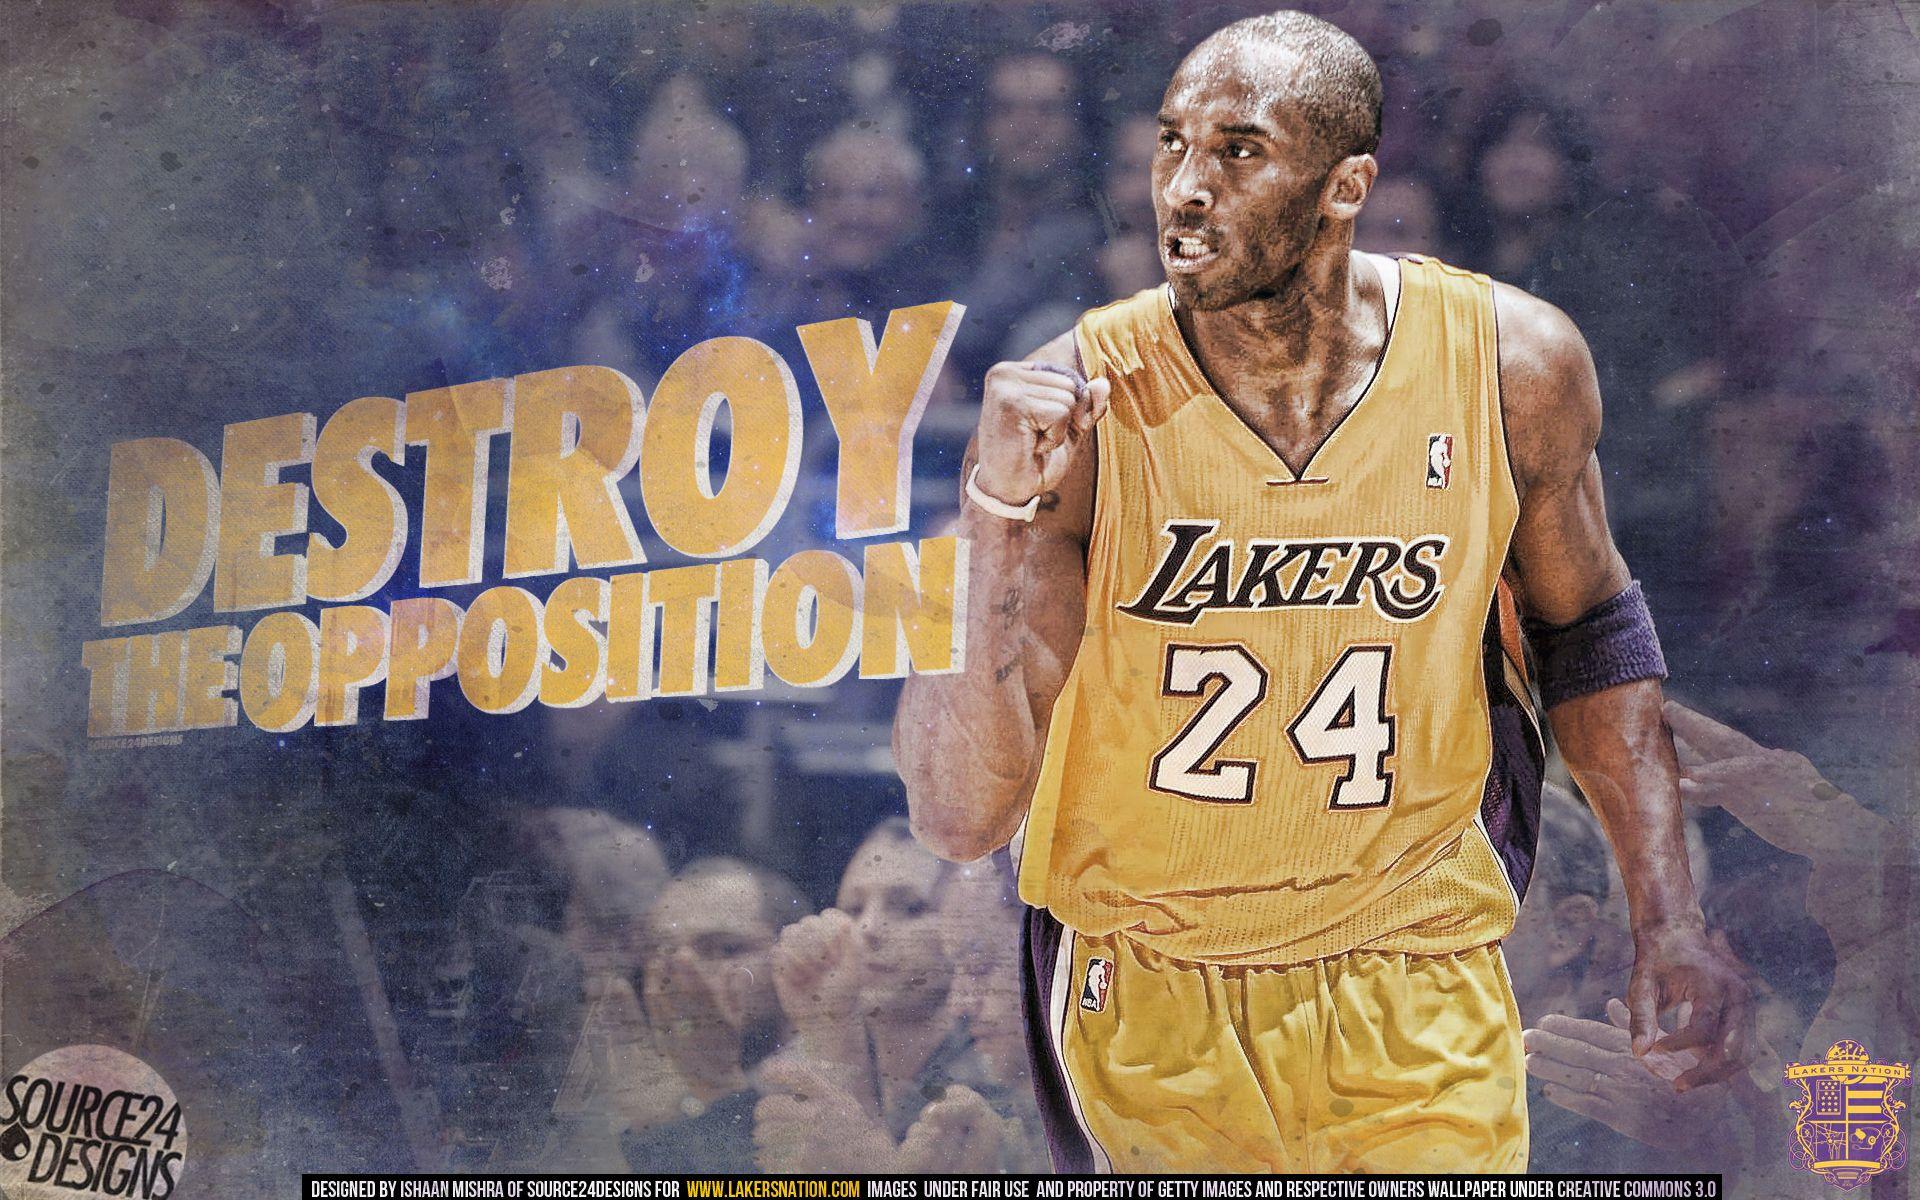 Kobe Bryant Destroy the Opposition